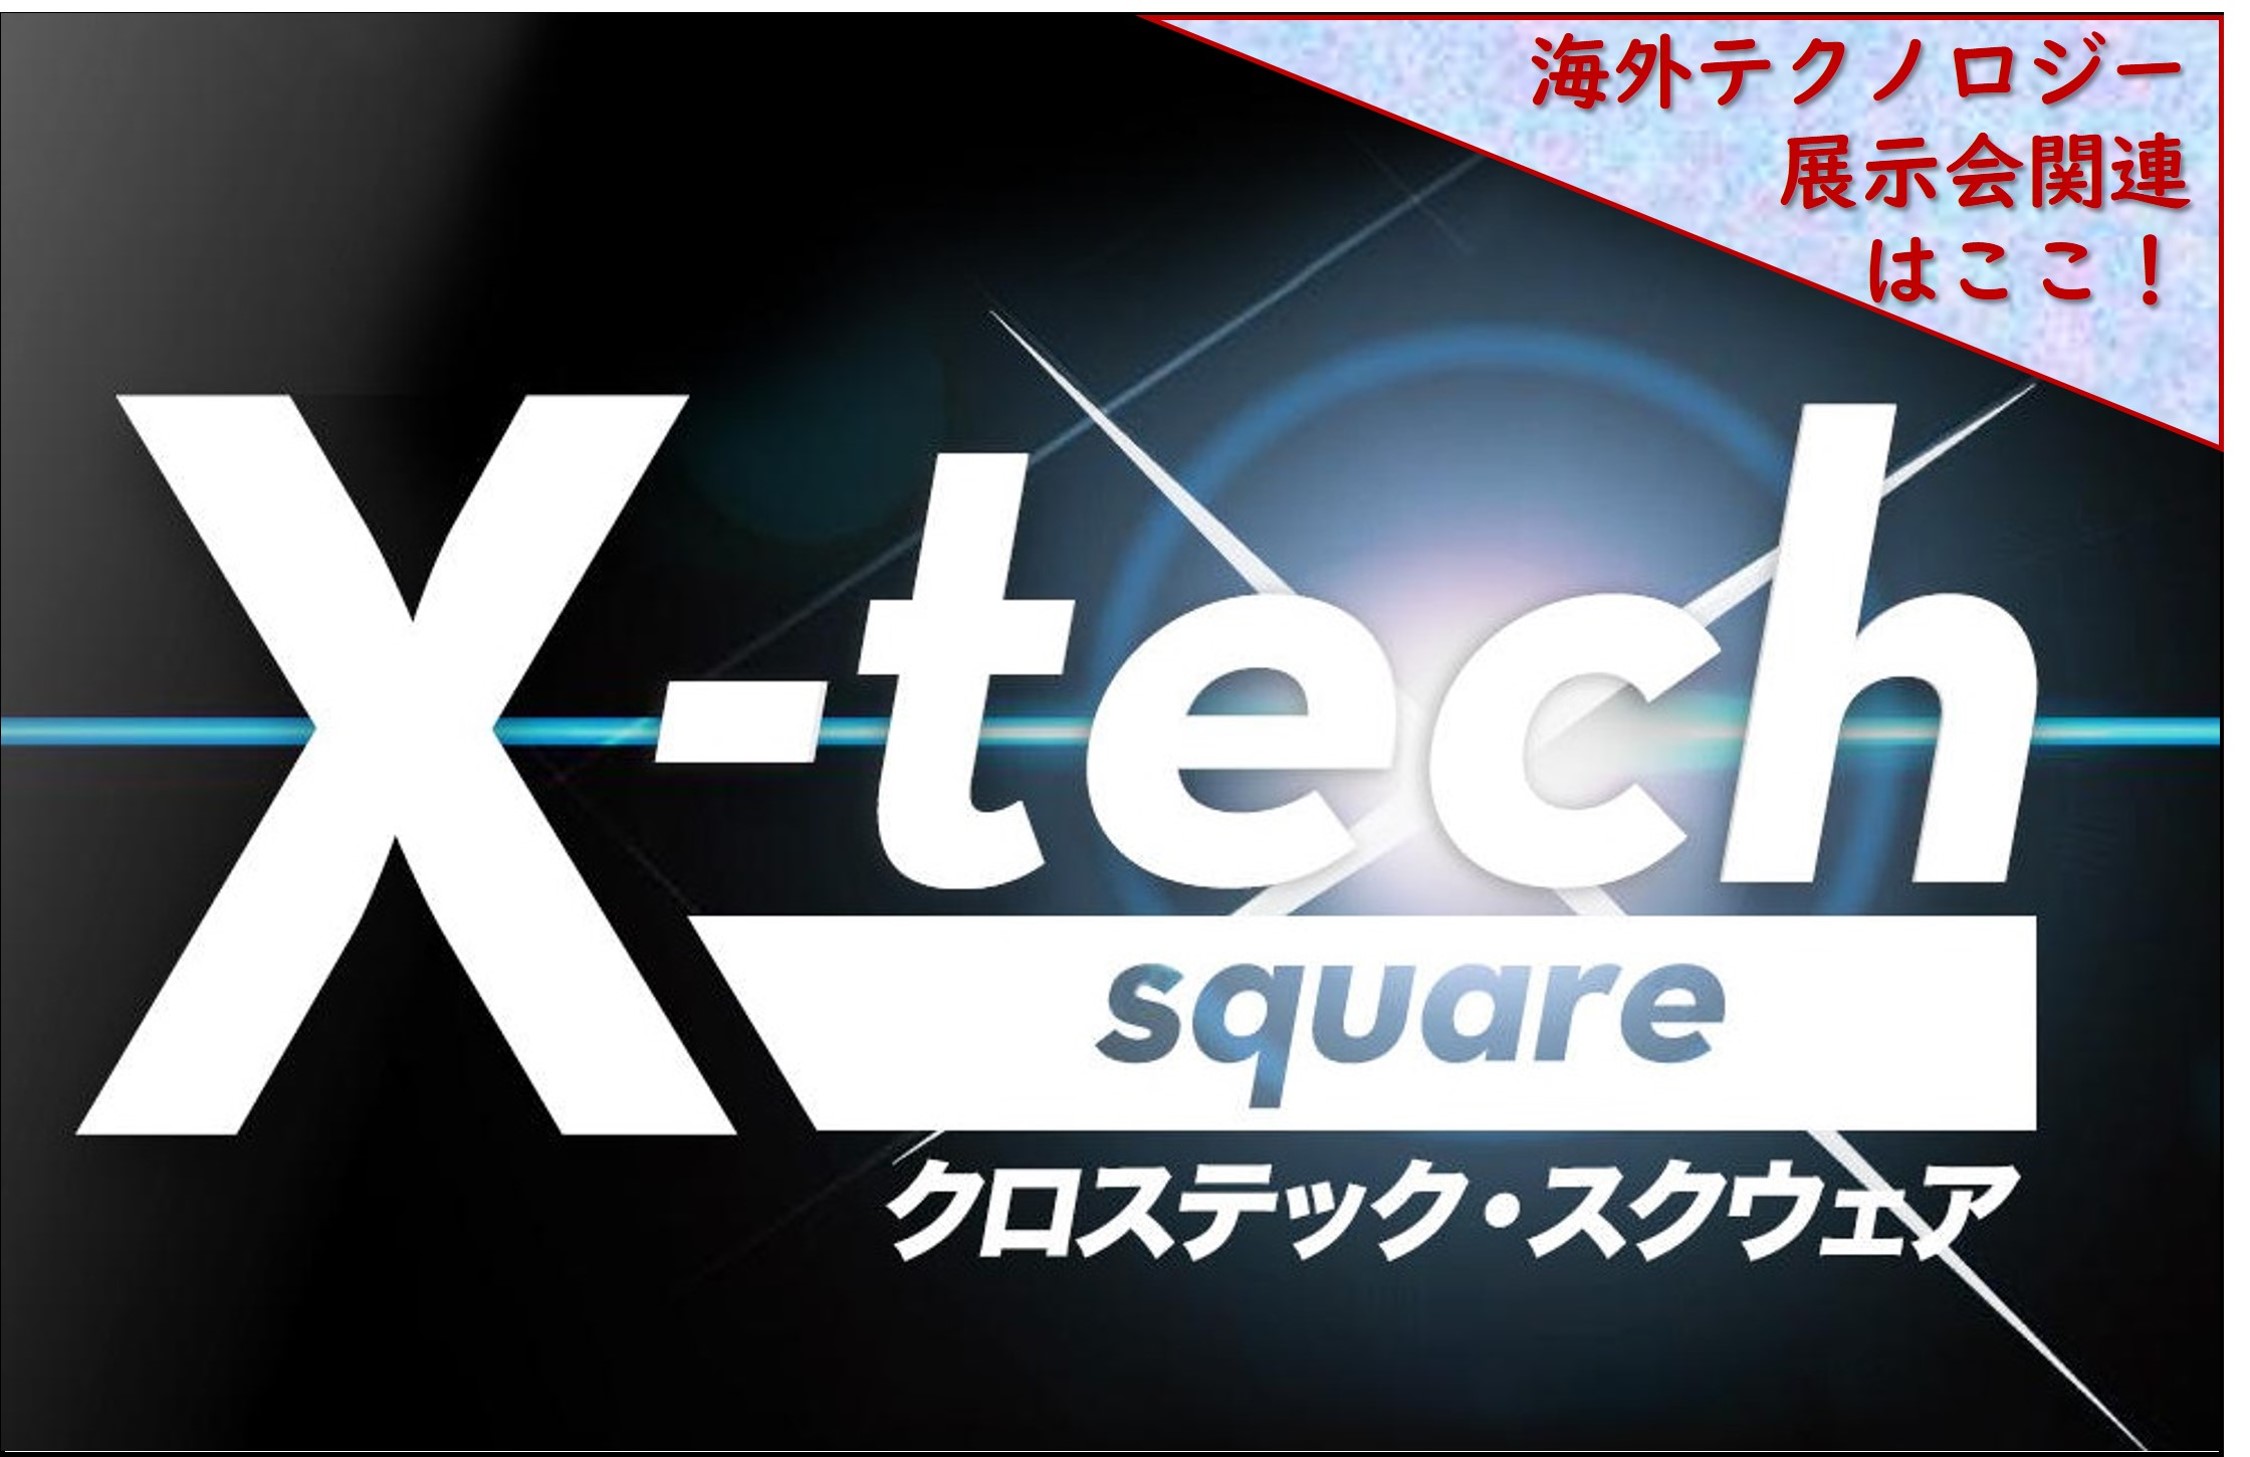 海外展示会ツアー専用デスク【X-tech square】